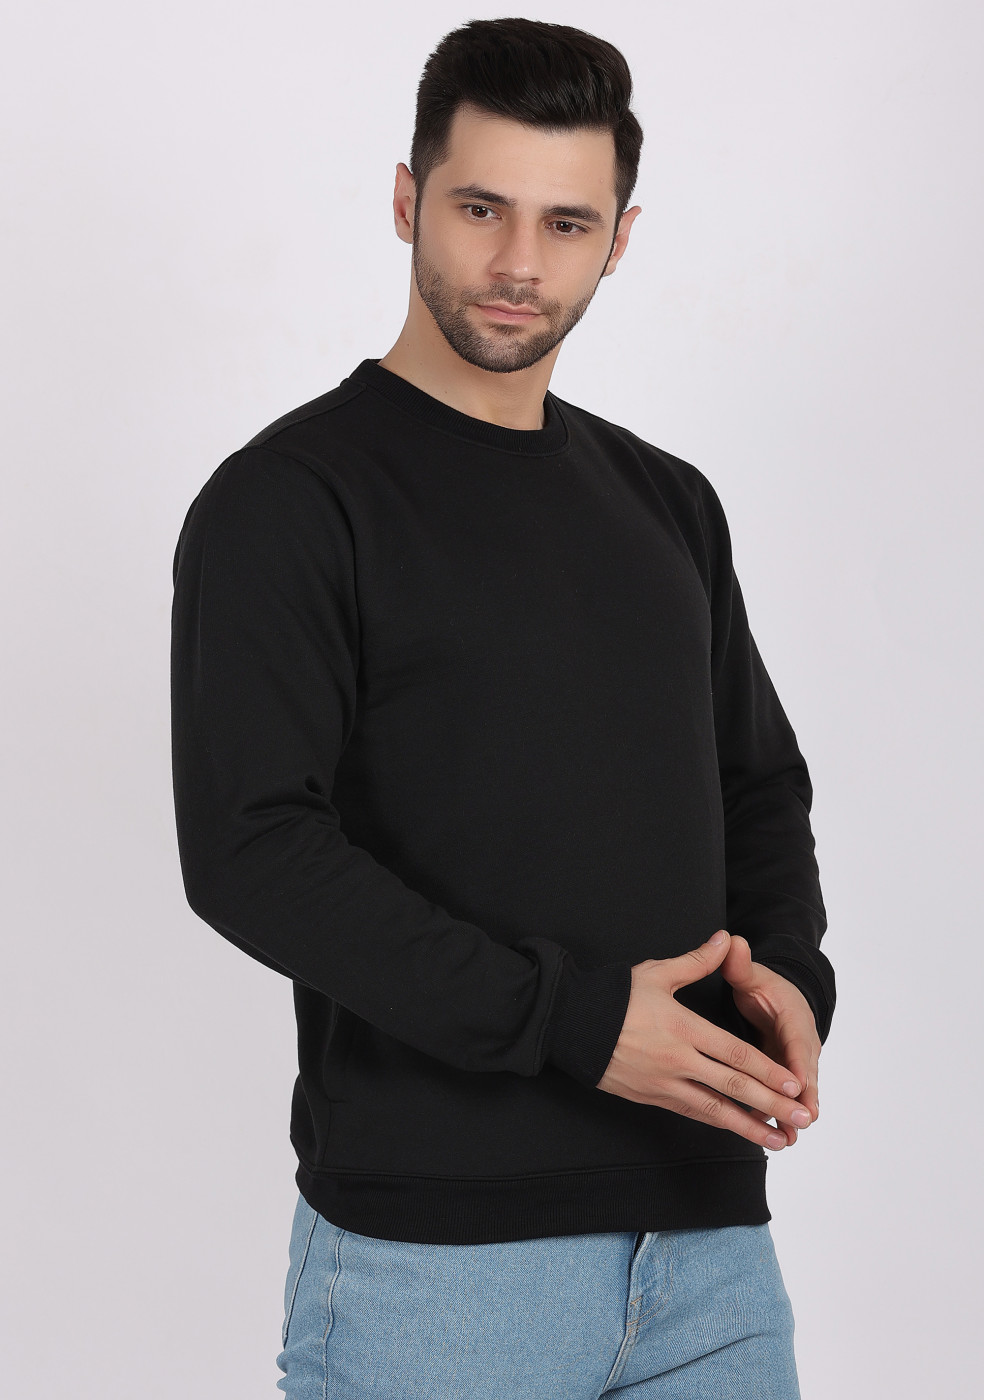 HUKH Black Color Sweatshirt For Men